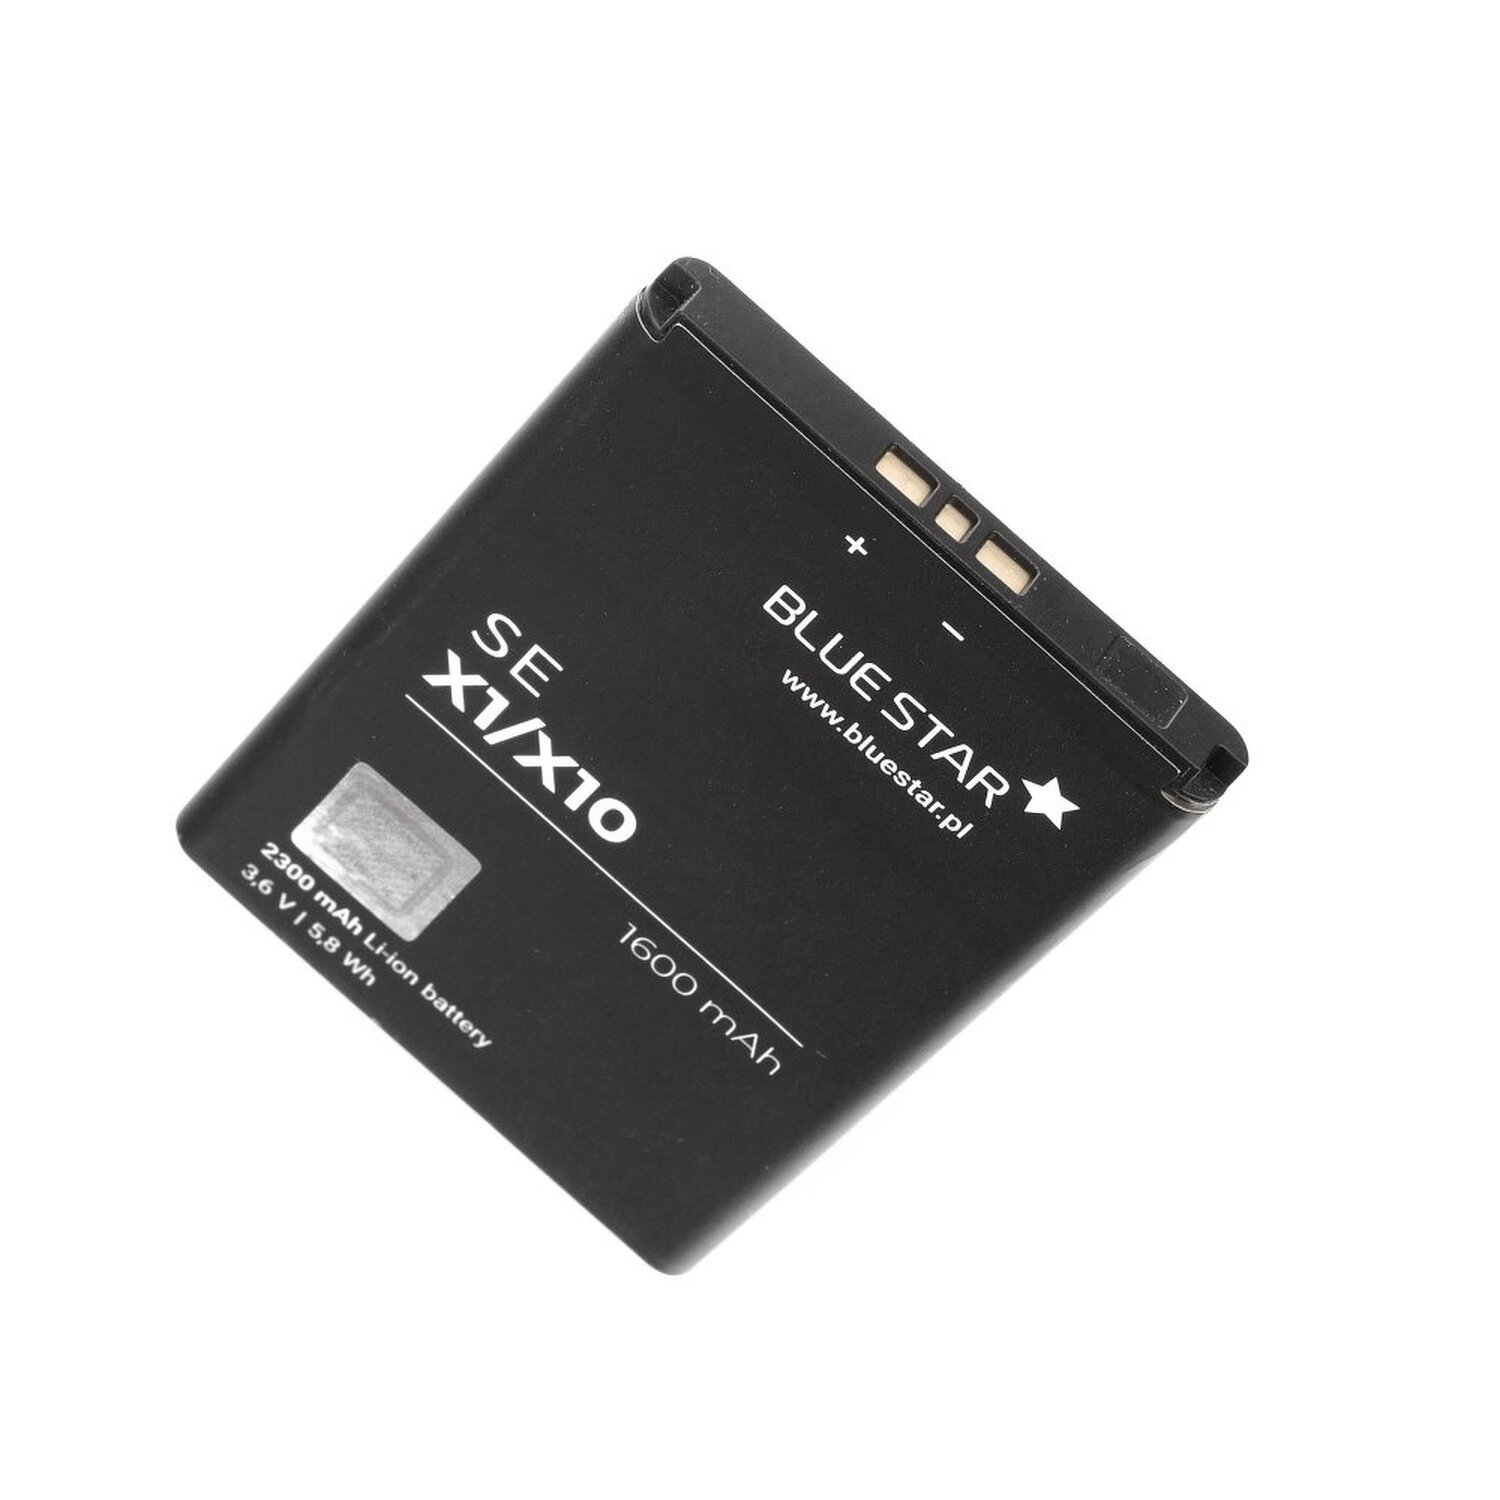 X10 Handyakku Sony / X1 Li-Ion für Xperia BLUESTAR Akku